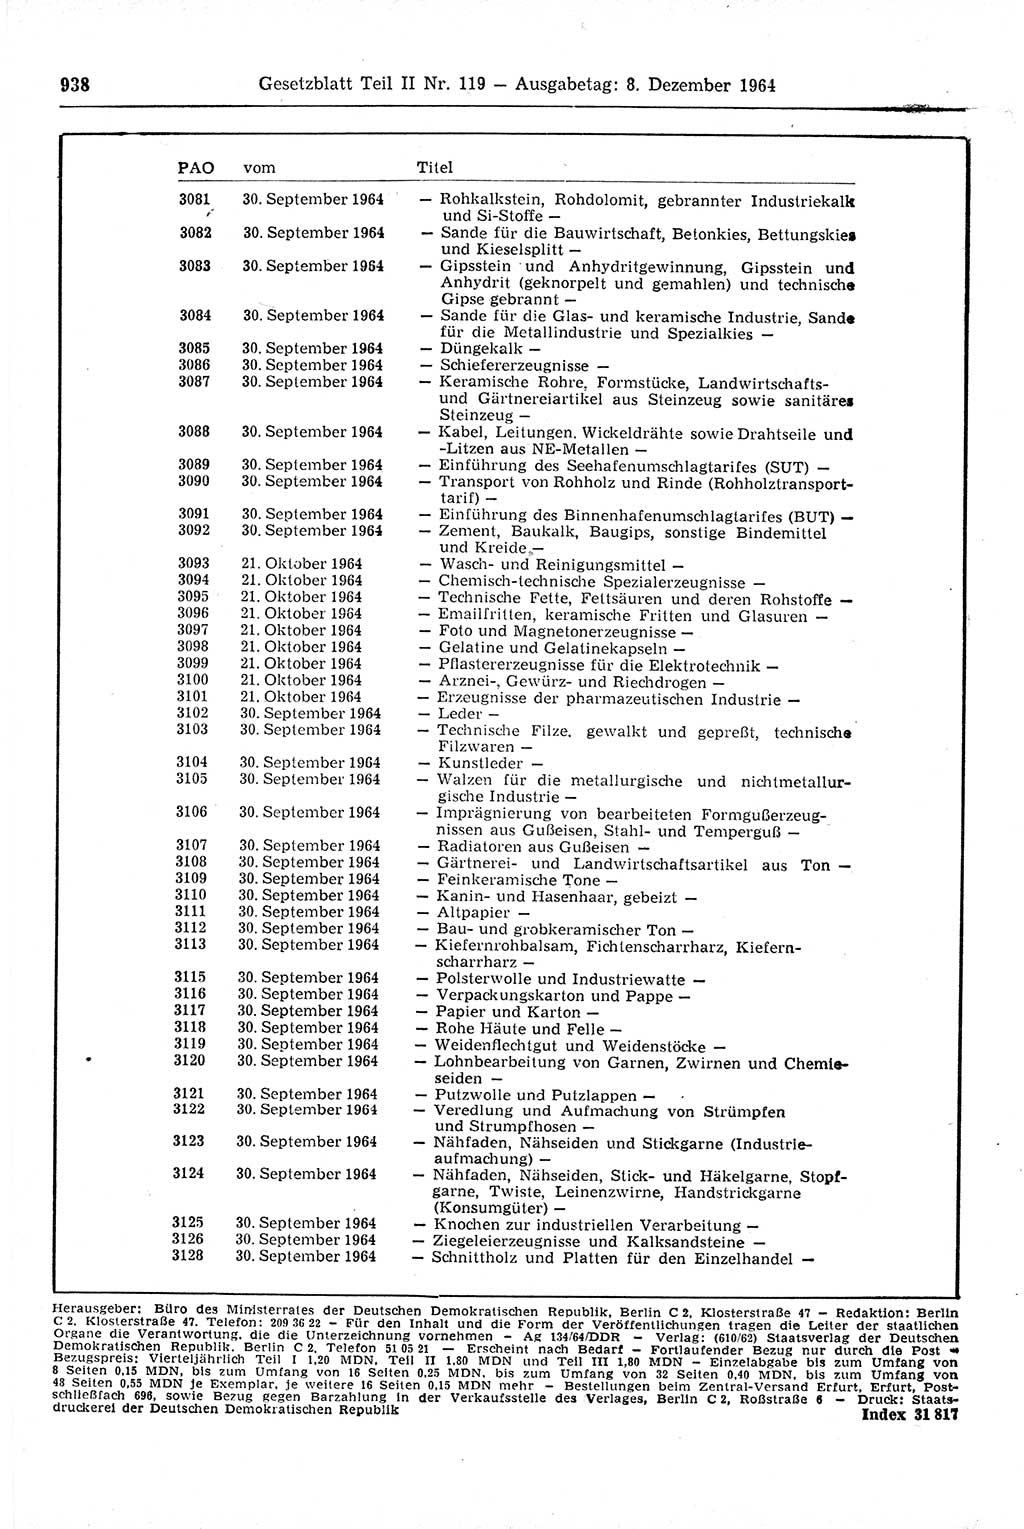 Gesetzblatt (GBl.) der Deutschen Demokratischen Republik (DDR) Teil ⅠⅠ 1964, Seite 938 (GBl. DDR ⅠⅠ 1964, S. 938)